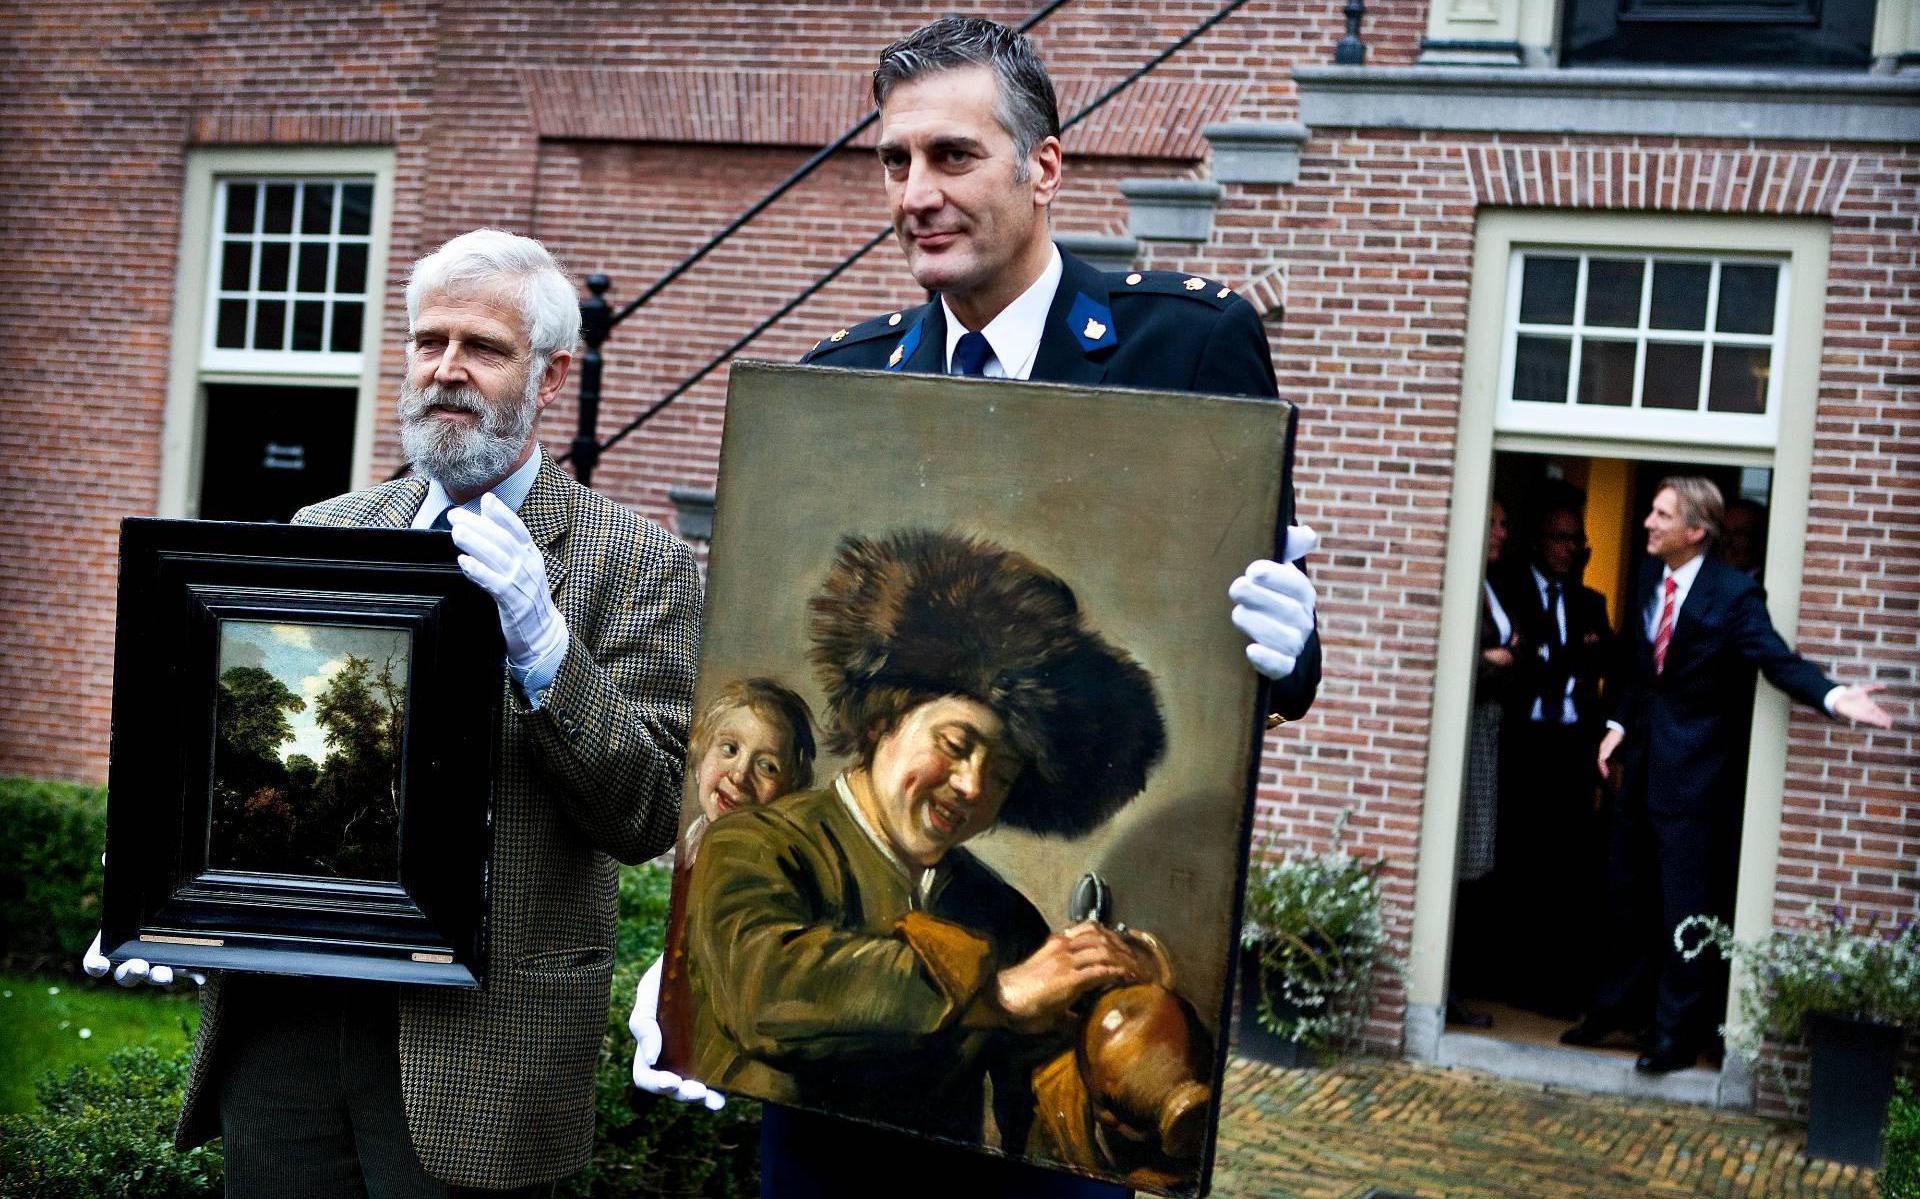 Frans Hals voor derde keer gestolen uit Leerdams museum